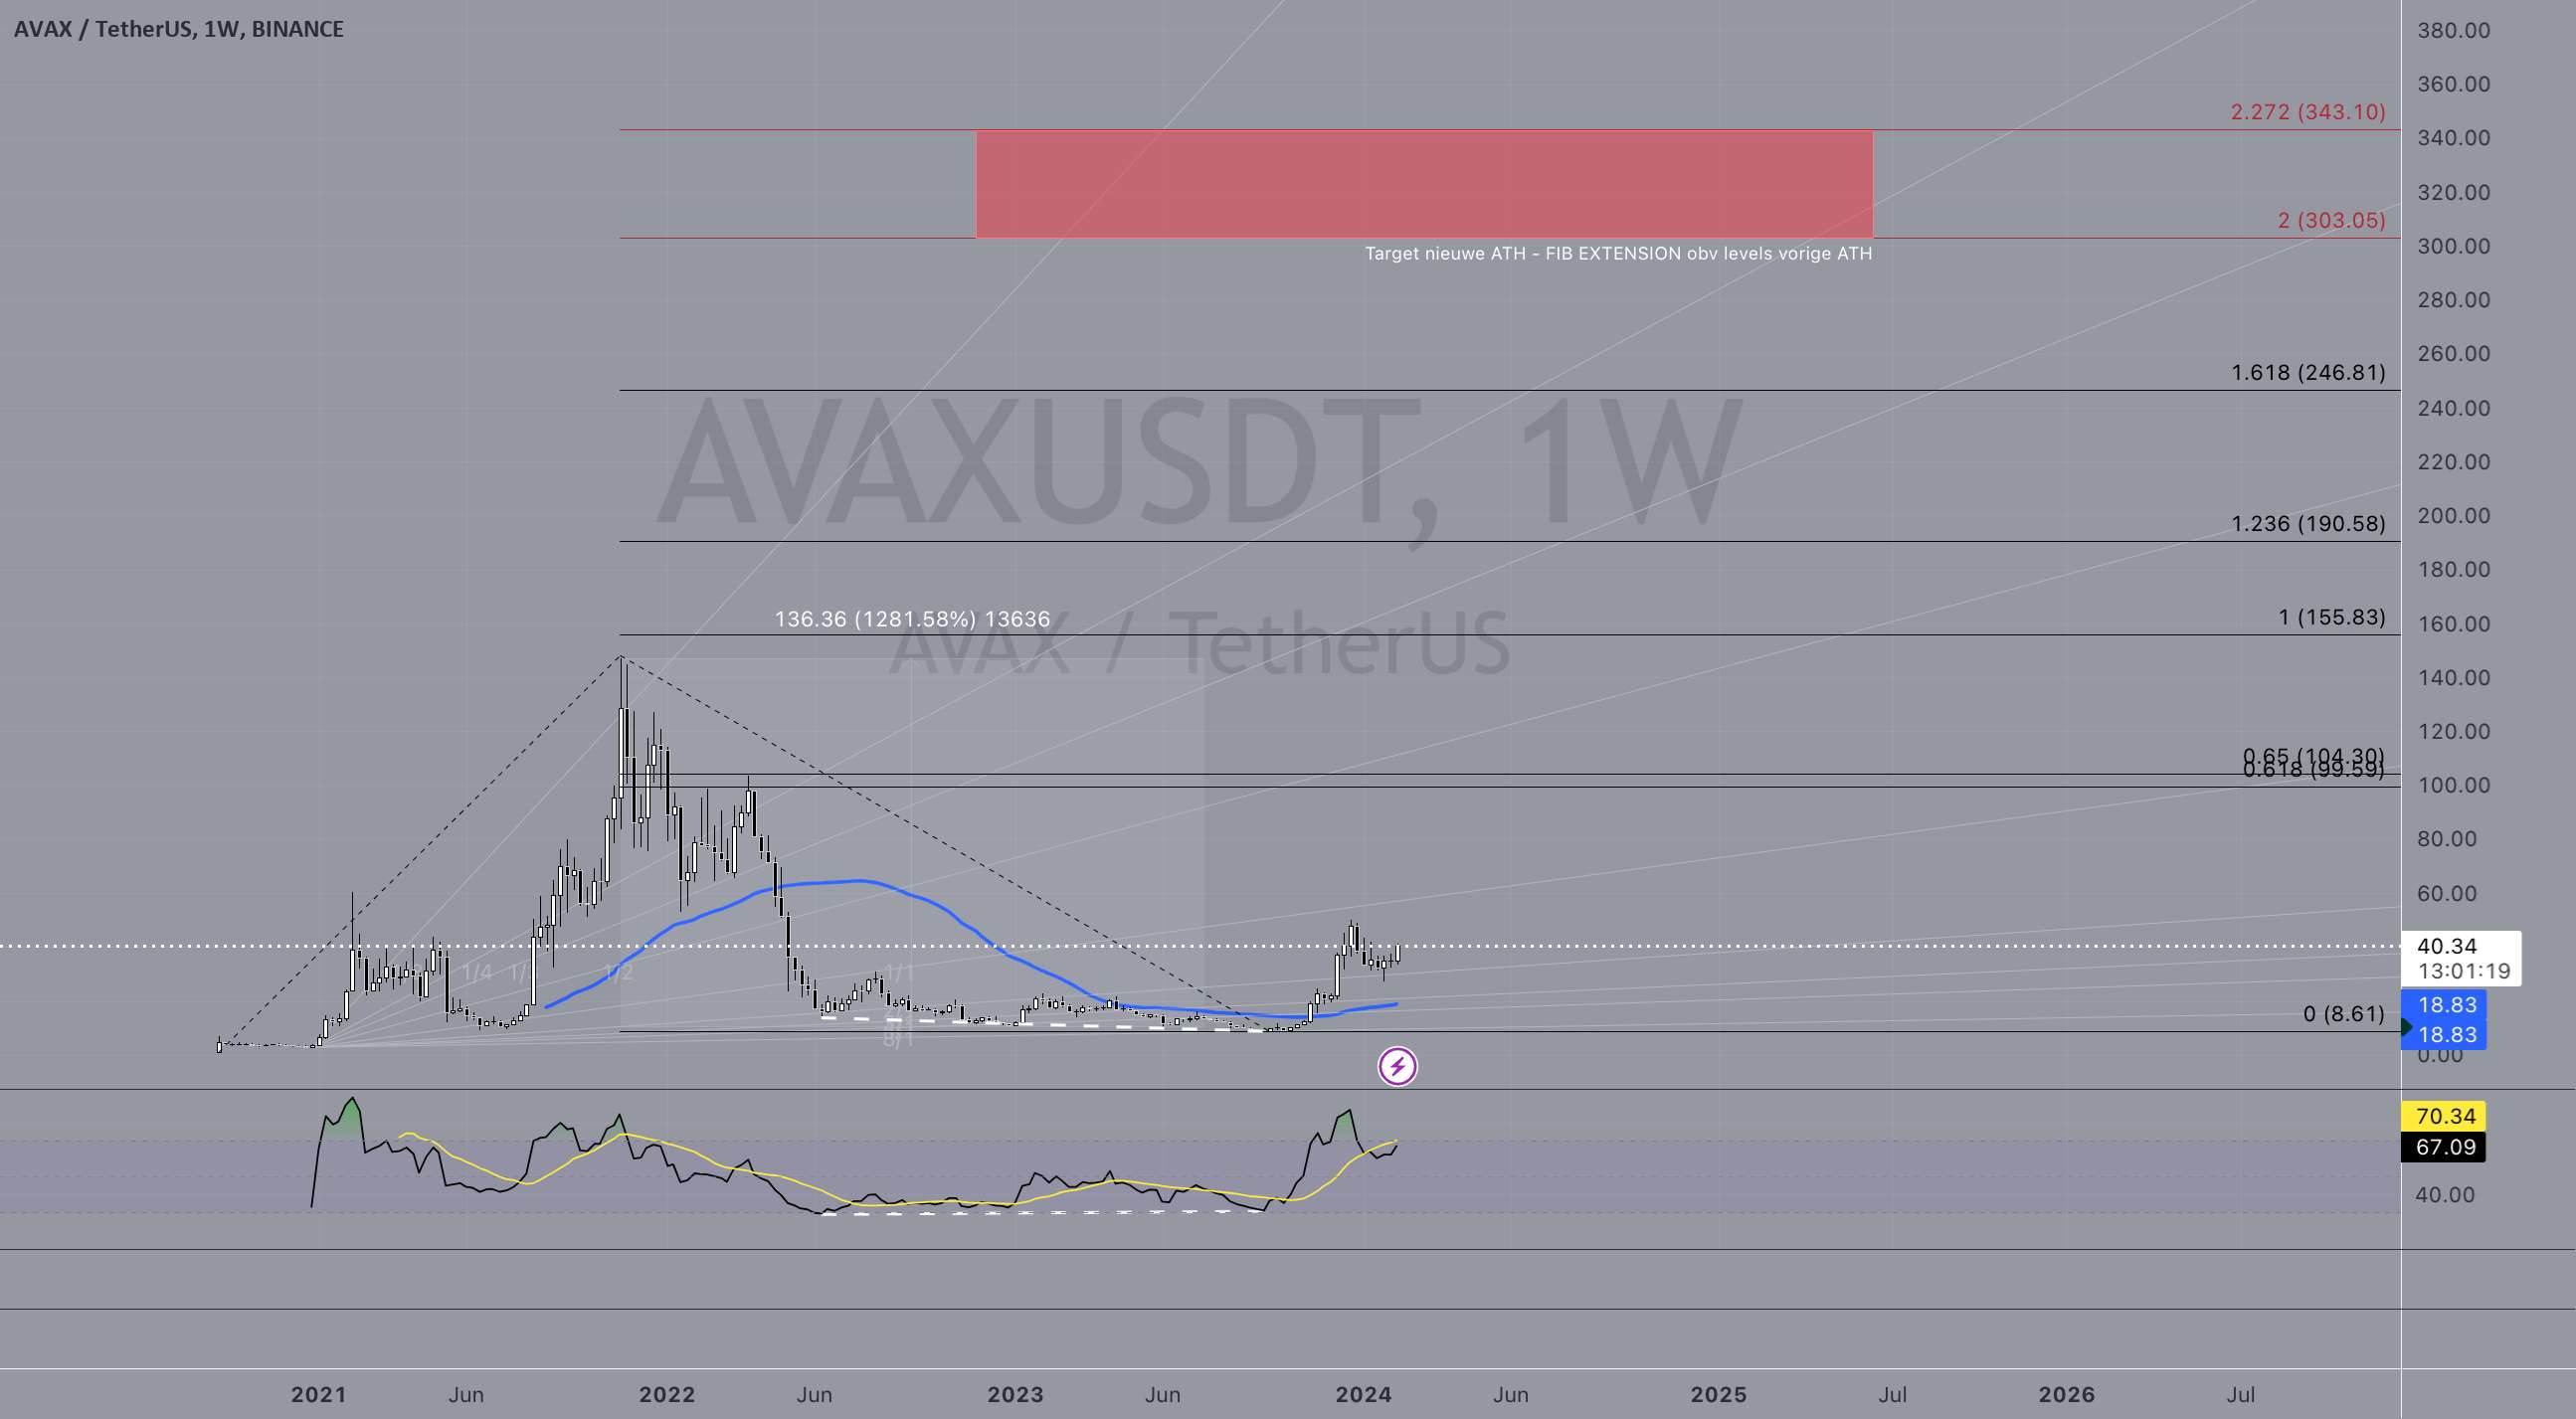  تحلیل آوالانچ - هفتگی جدید ATH AVAX بر اساس پسوند فیب تاریخی